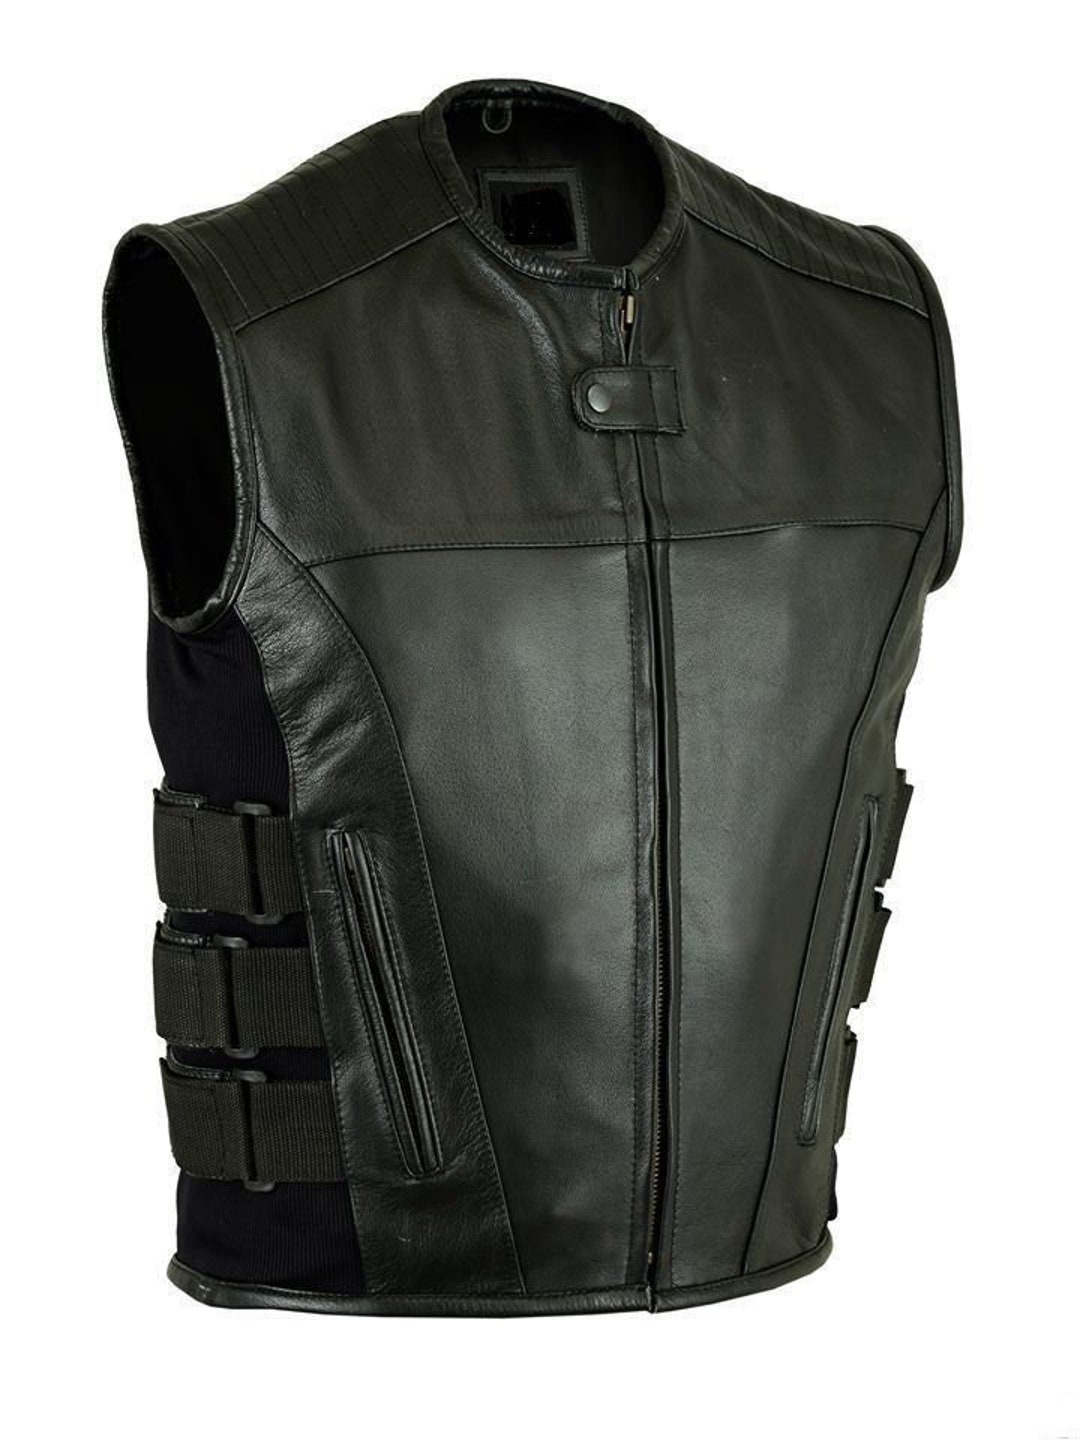 Faux Leather Fishing Vest Black Vintage Sleeveless Jacket Cargo XL 